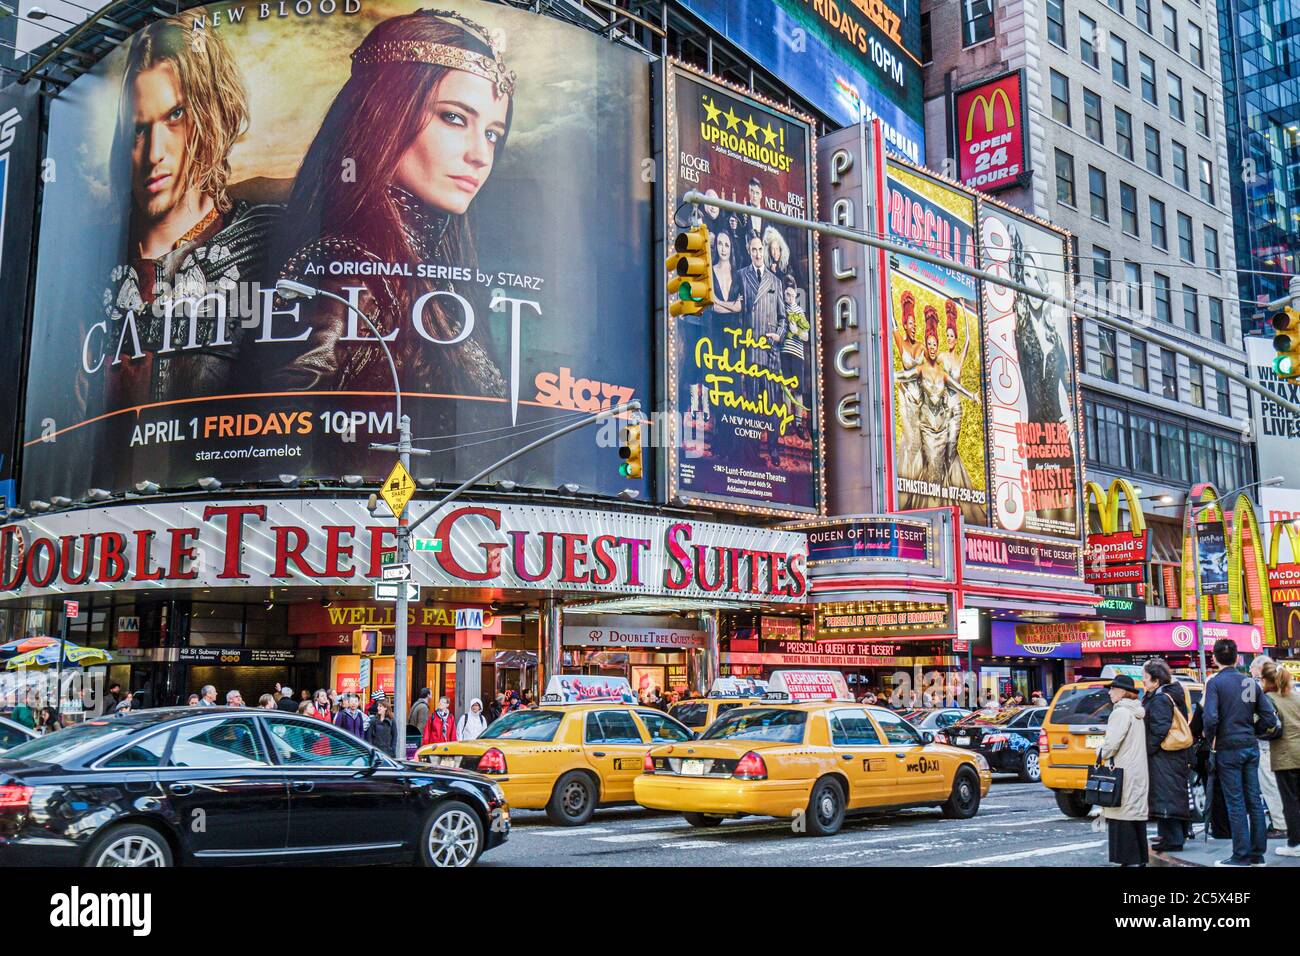 New York City,NYC NY Midtown,Manhattan,Times Square,Theatre District,Broadway,insegna illuminata,spettacoli,cartellone,pubblicità,annuncio,annunci,Camelot,Aggiungi Foto Stock